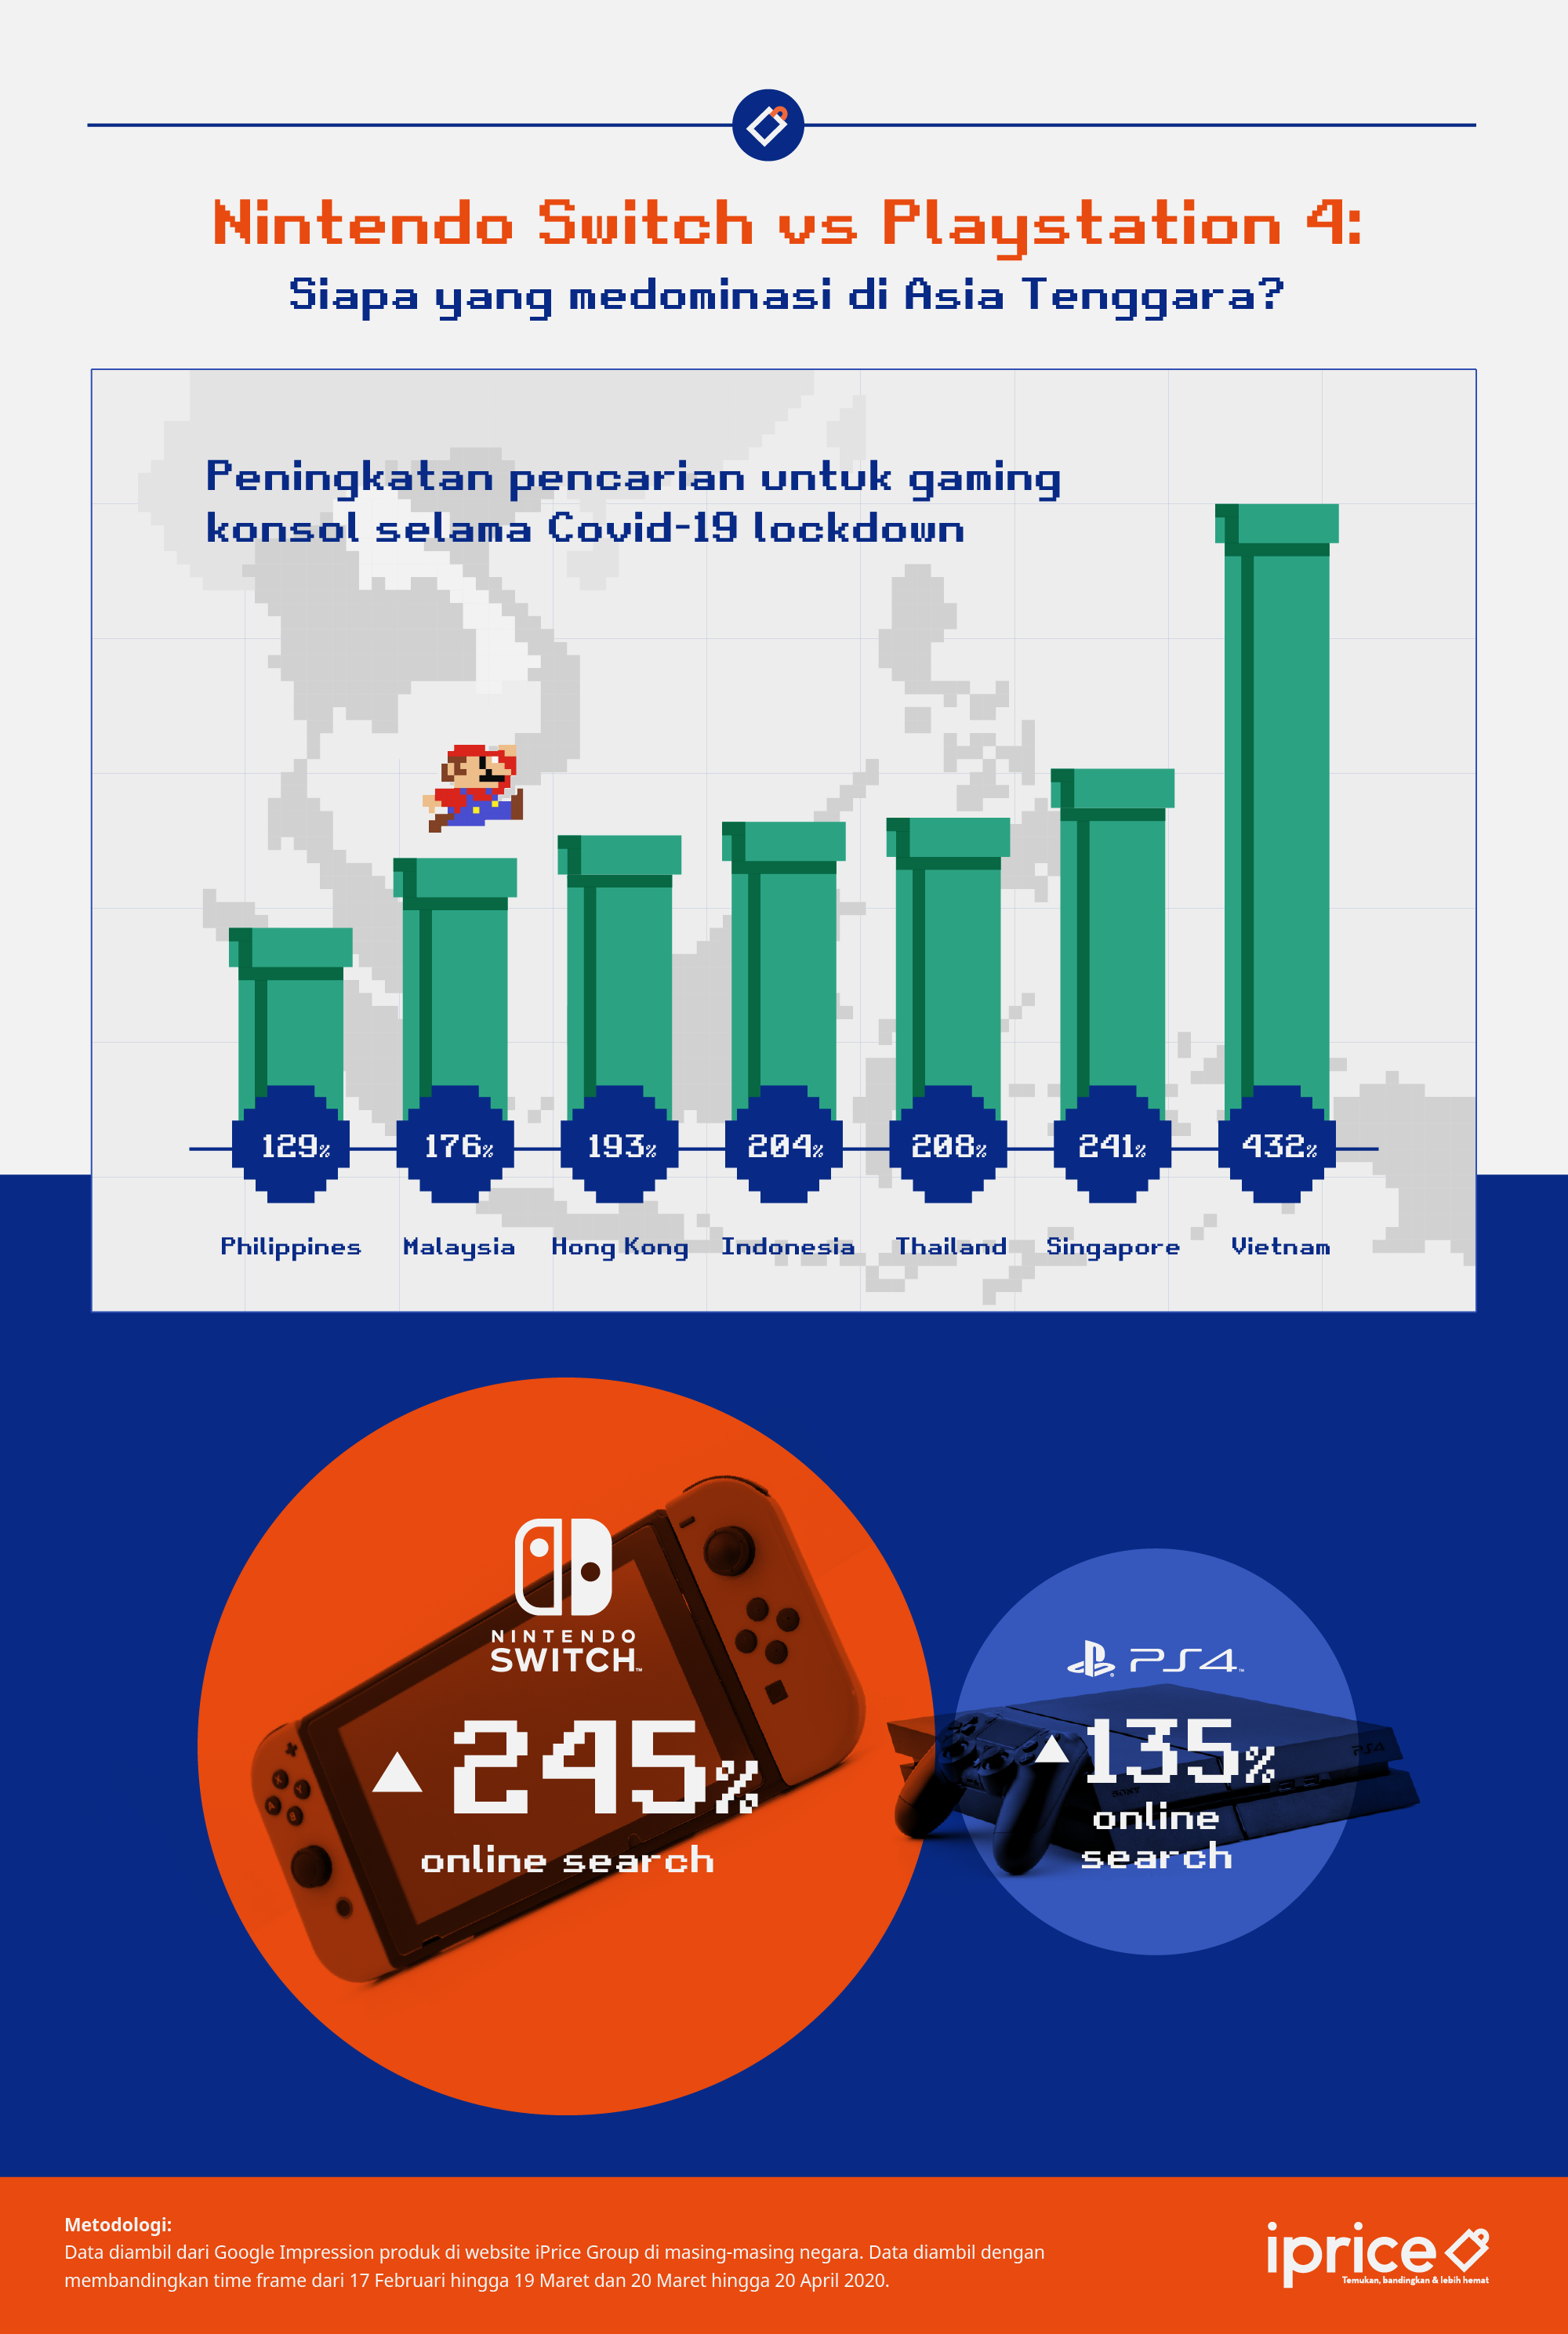 Riset iPrice soal popularitas gaming console di Asia Tenggara selama pandemi